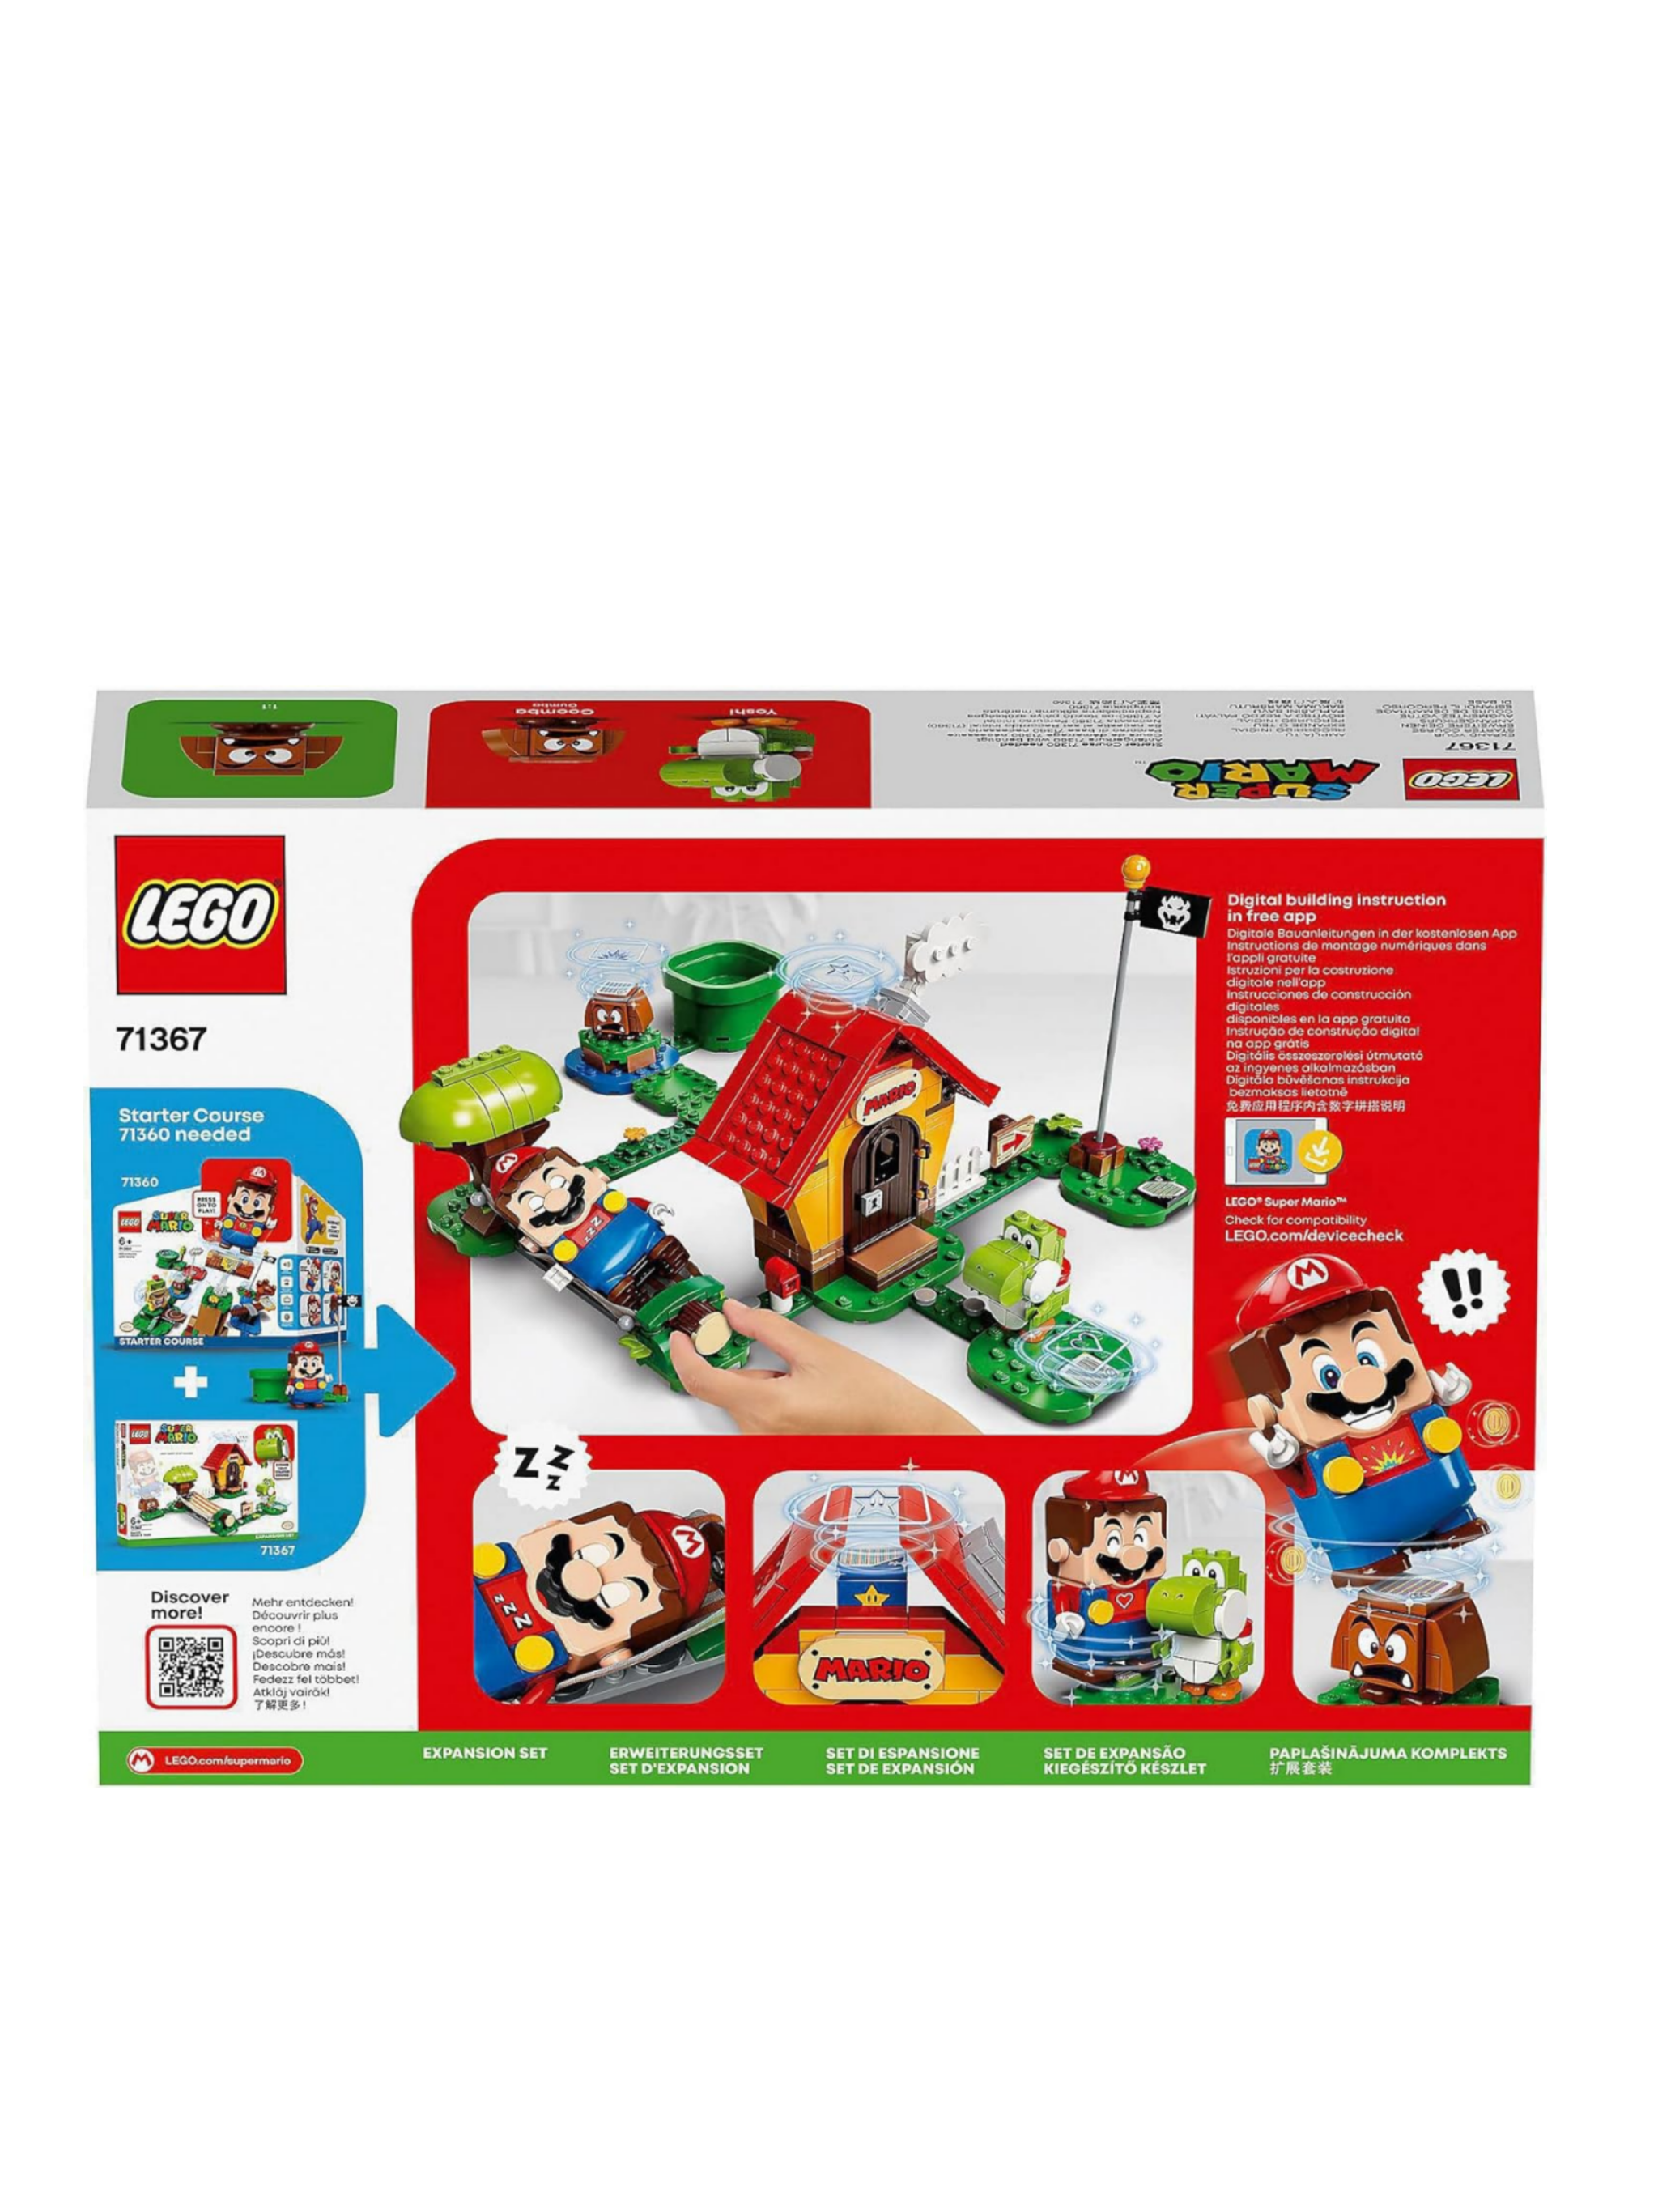 LEGO 71367 Super Mario Marios Haus und Yoshi – Erweiterungsset, Bauspiel